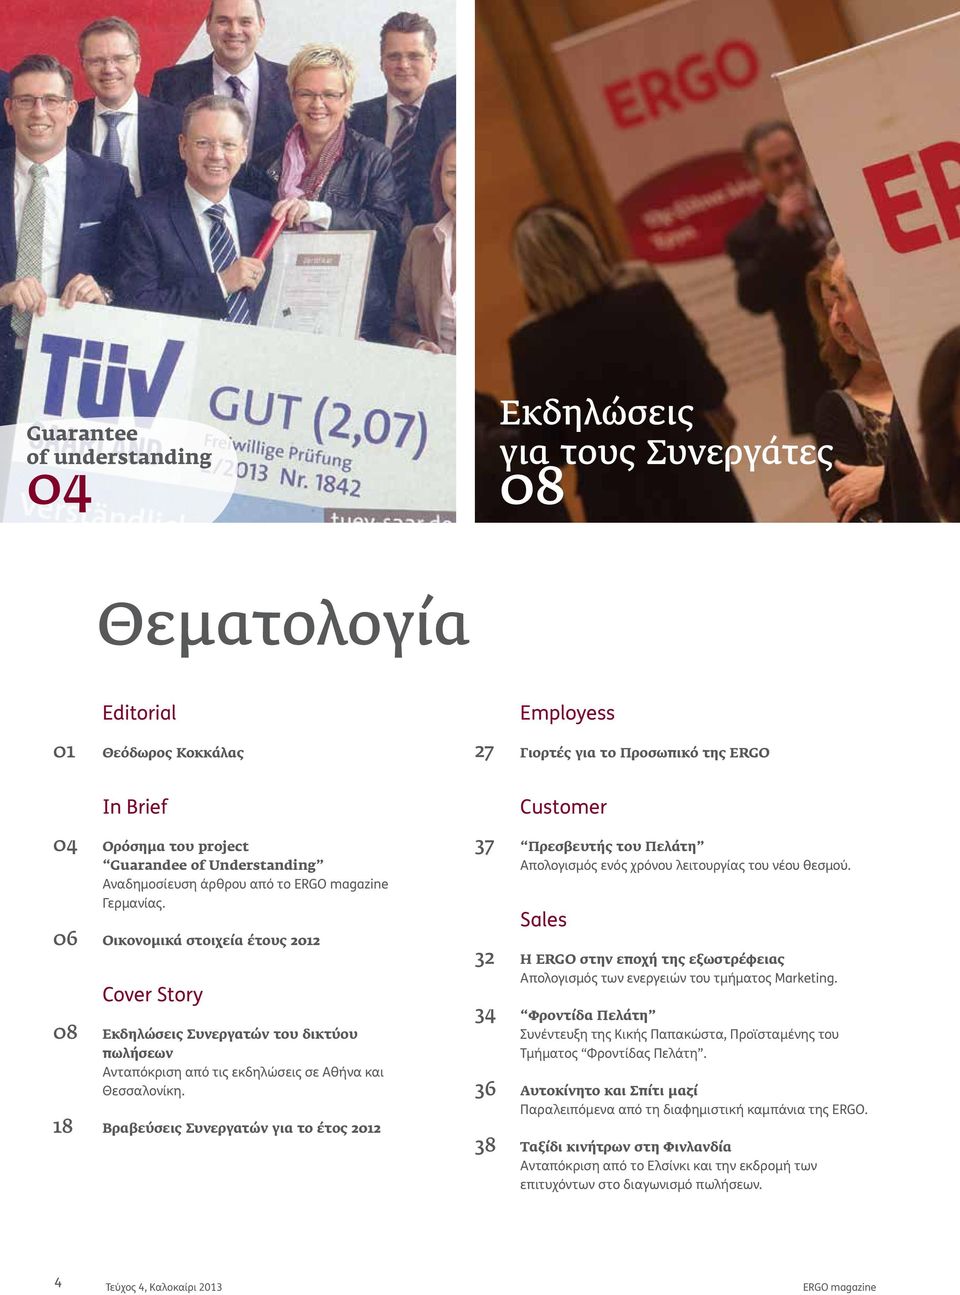 Οικονομικά στοιχεία έτους 2012 Cover Story Εκδηλώσεις Συνεργατών του δικτύου ωλήσεων Ανταόκριση αό τις εκδηλώσεις σε Αθήνα και Θεσσαλονίκη.